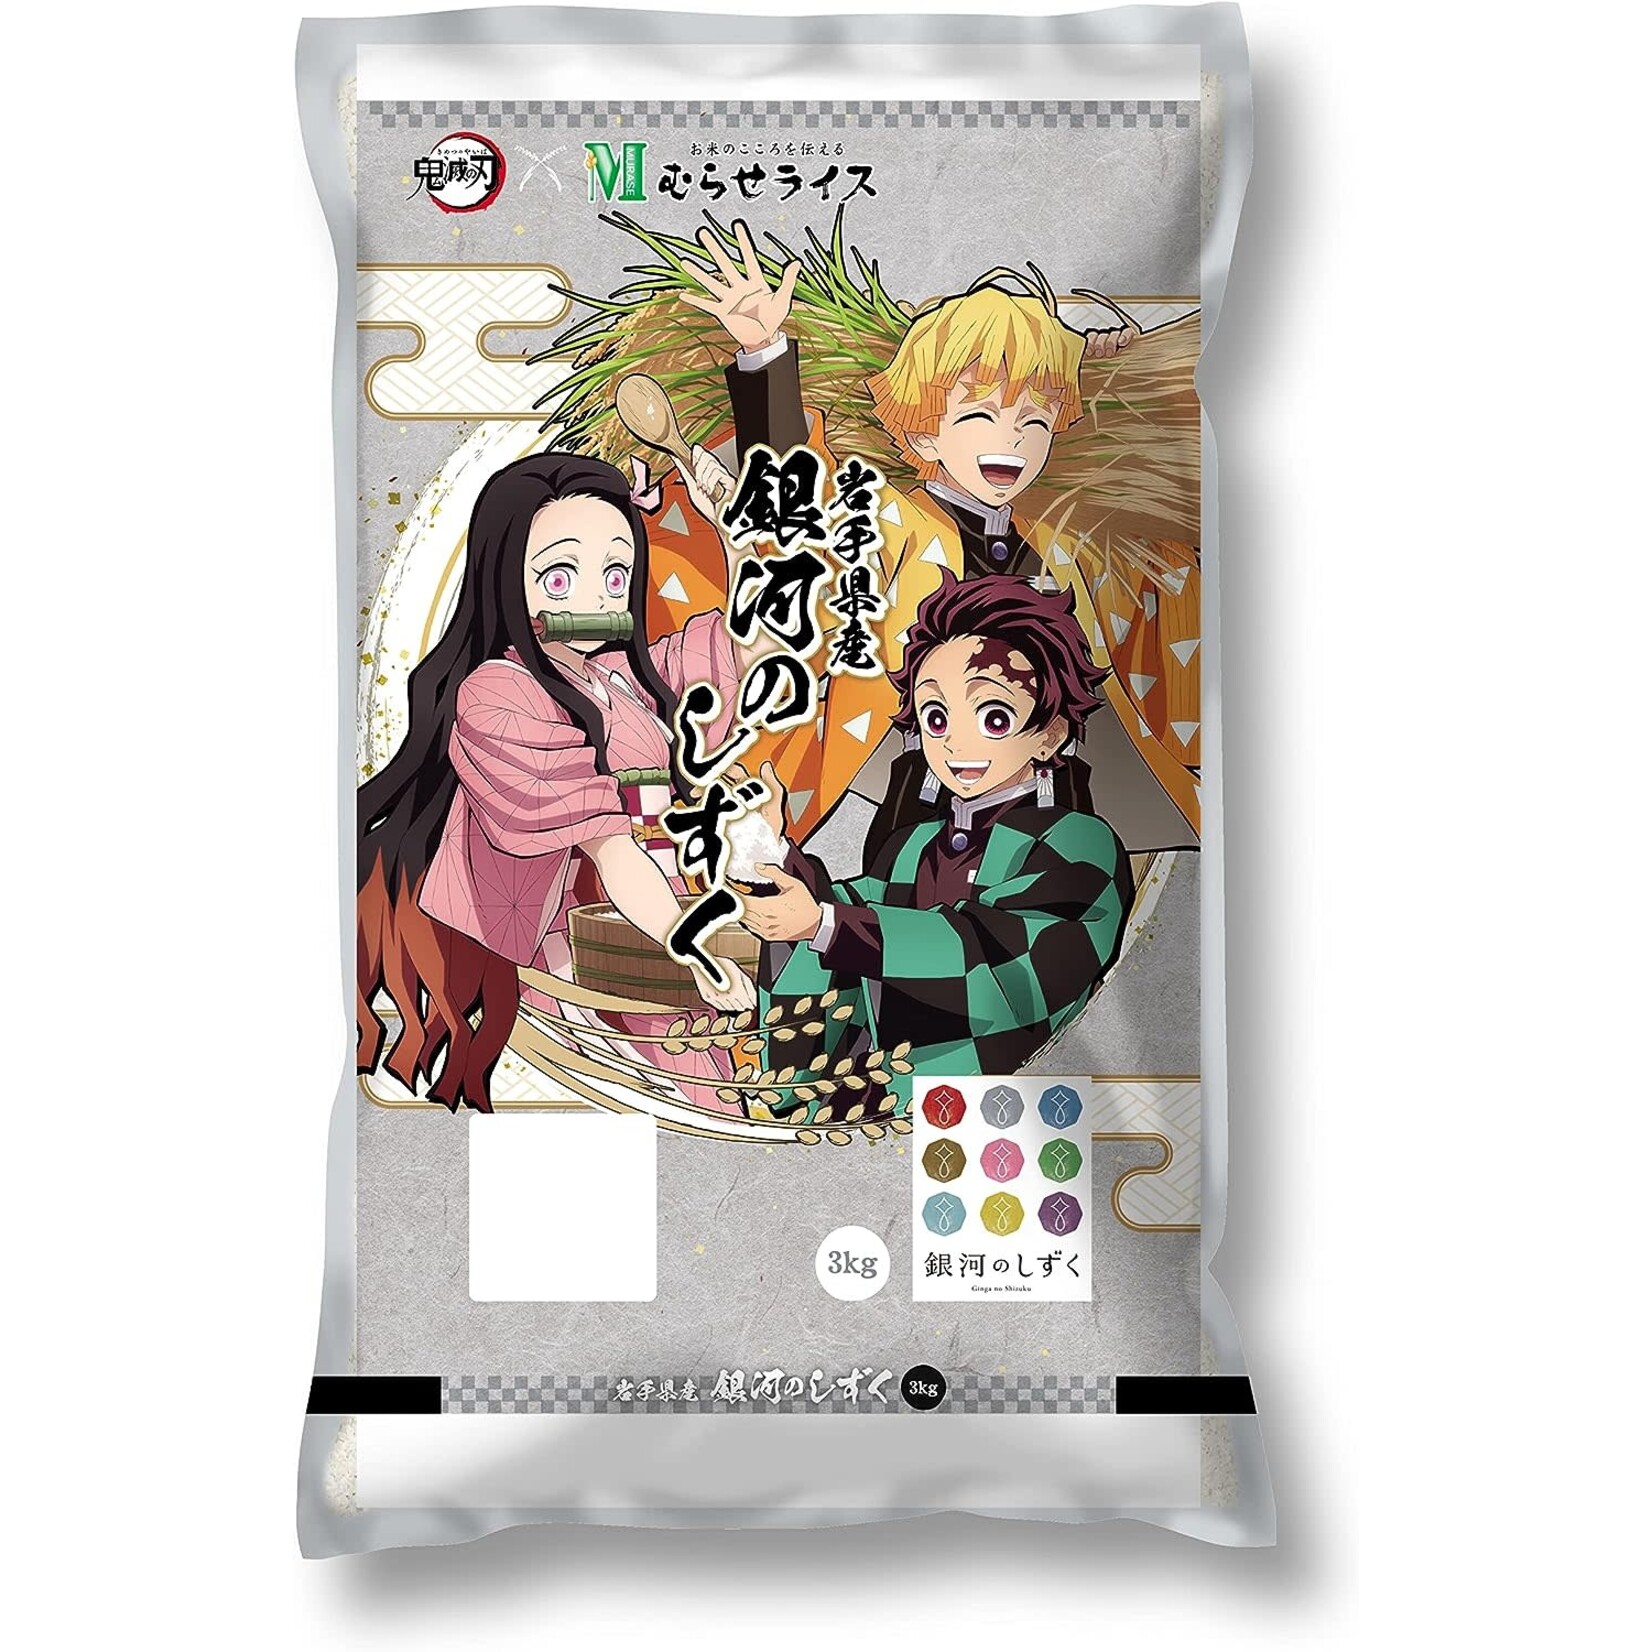 Rice - 4 year aged Short-Grain Rice - "Kimetsu" Iwate Ginga no Shizuku 6.6lbs bag